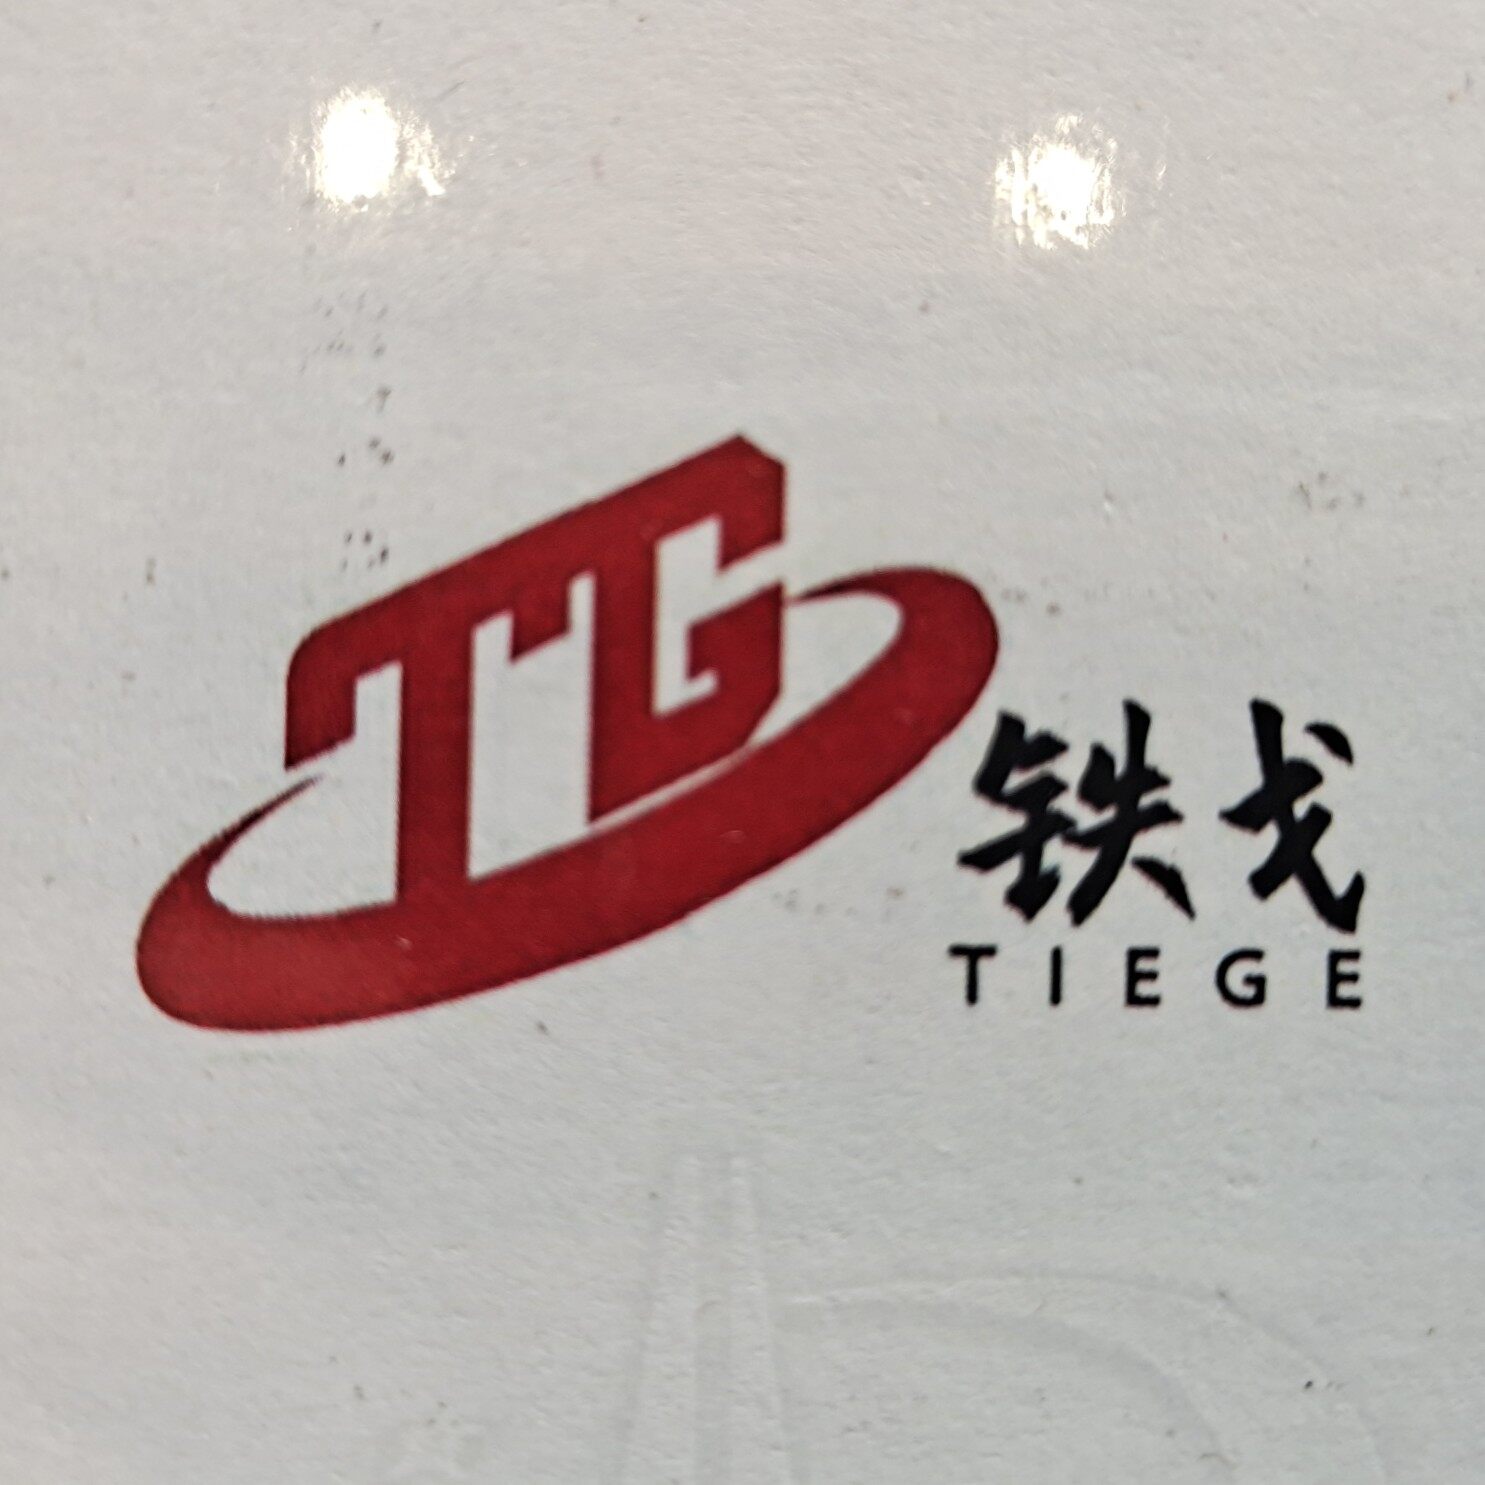 湖北铁戈楚越建设工程有限公司logo